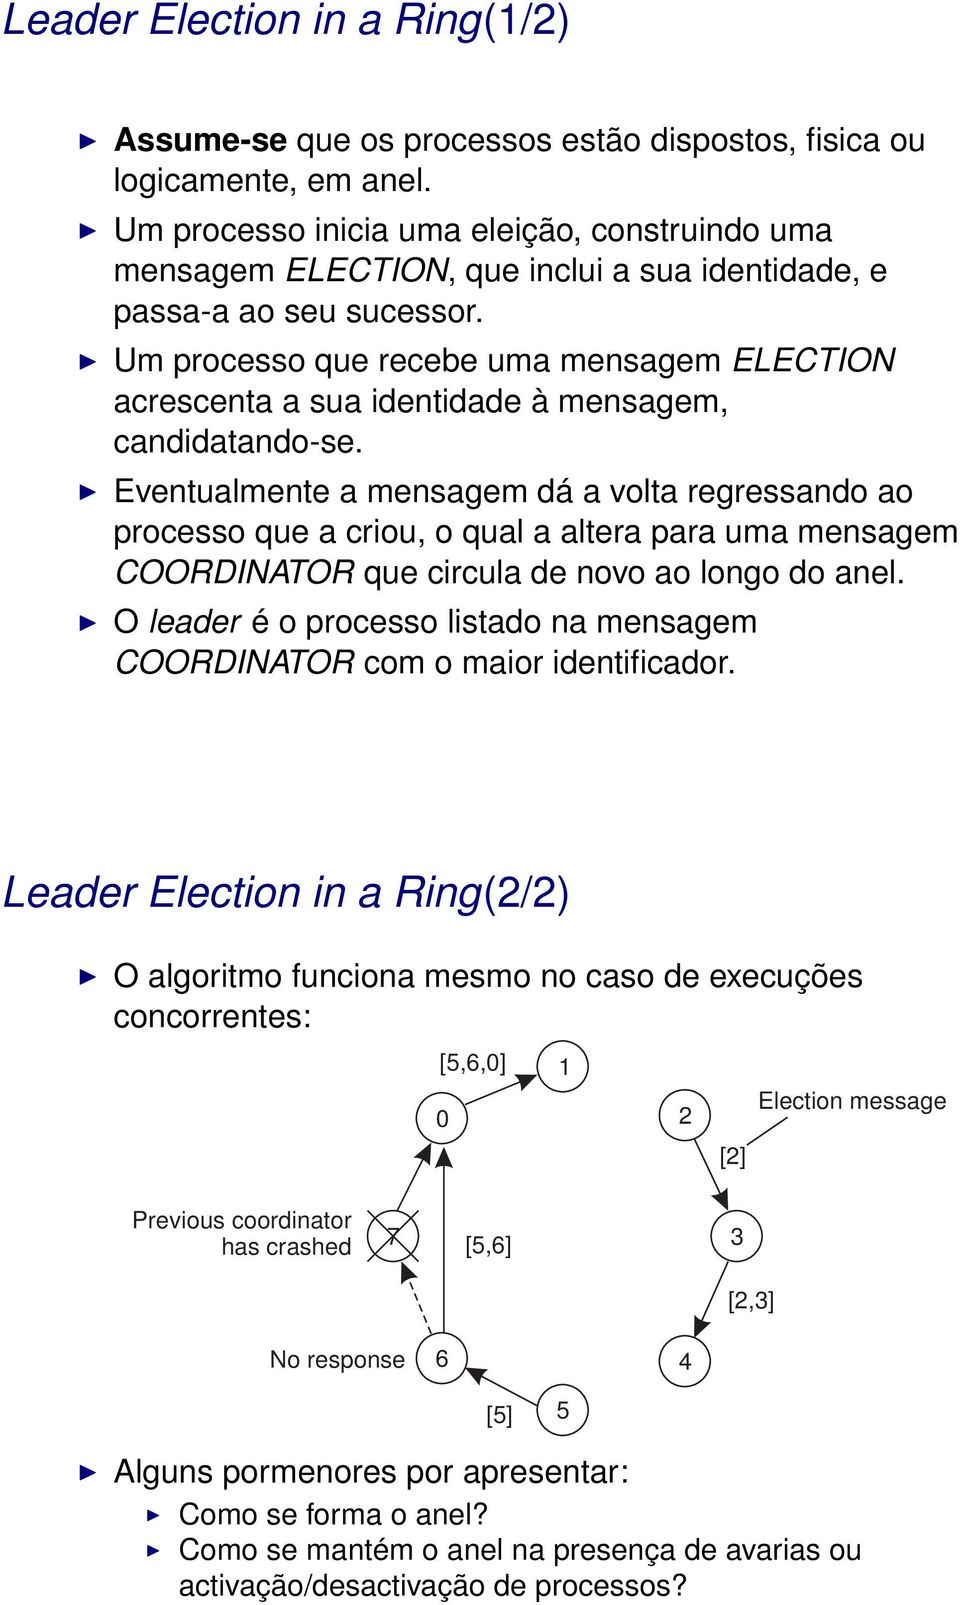 Um processo que recebe uma mensagem ELECTION acrescenta a sua identidade à mensagem, candidatando-se.